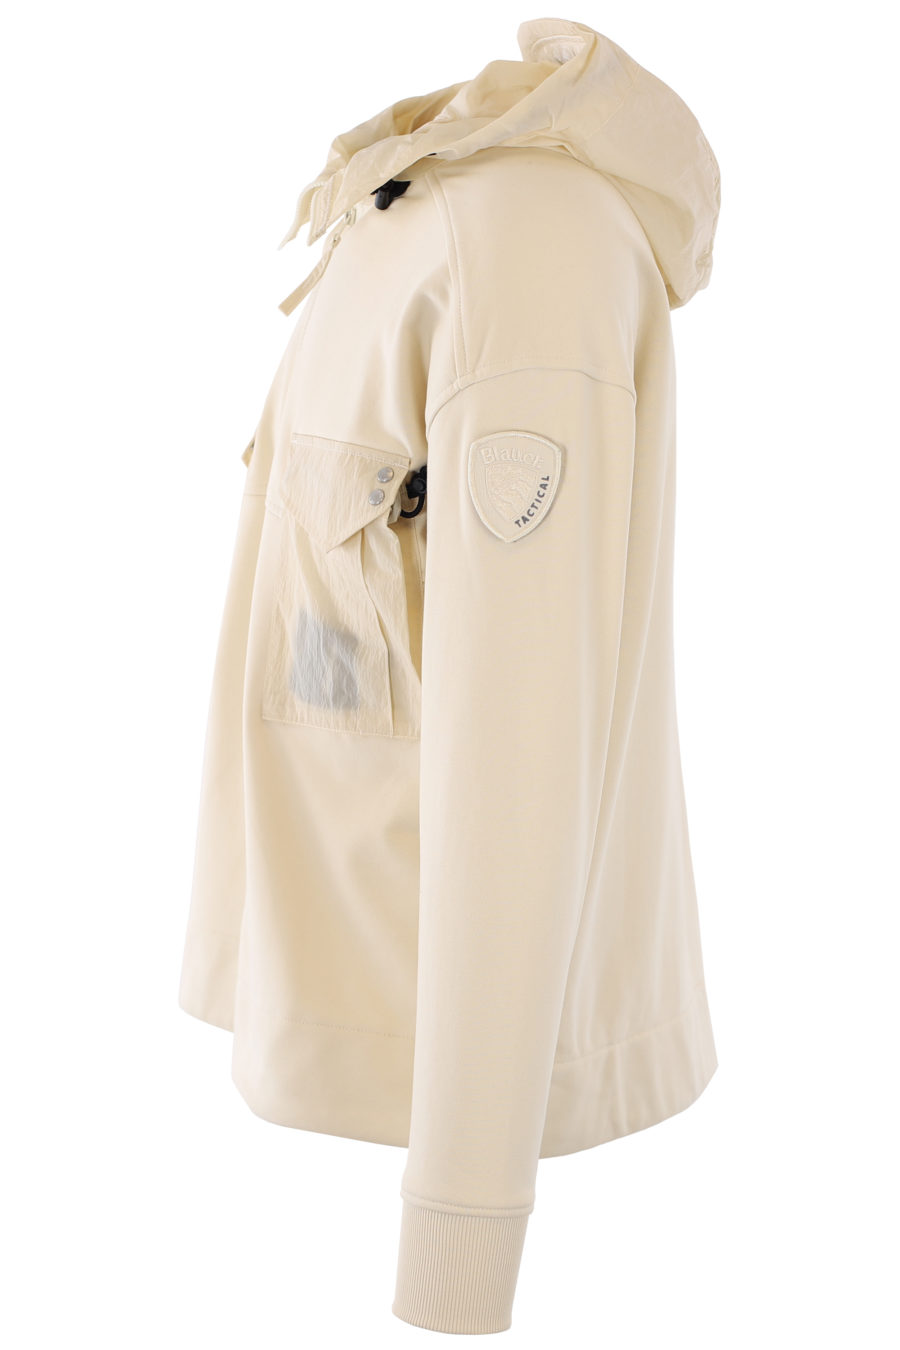 Chaqueta de chándal color natural con capucha y bolsillos - IMG 1159